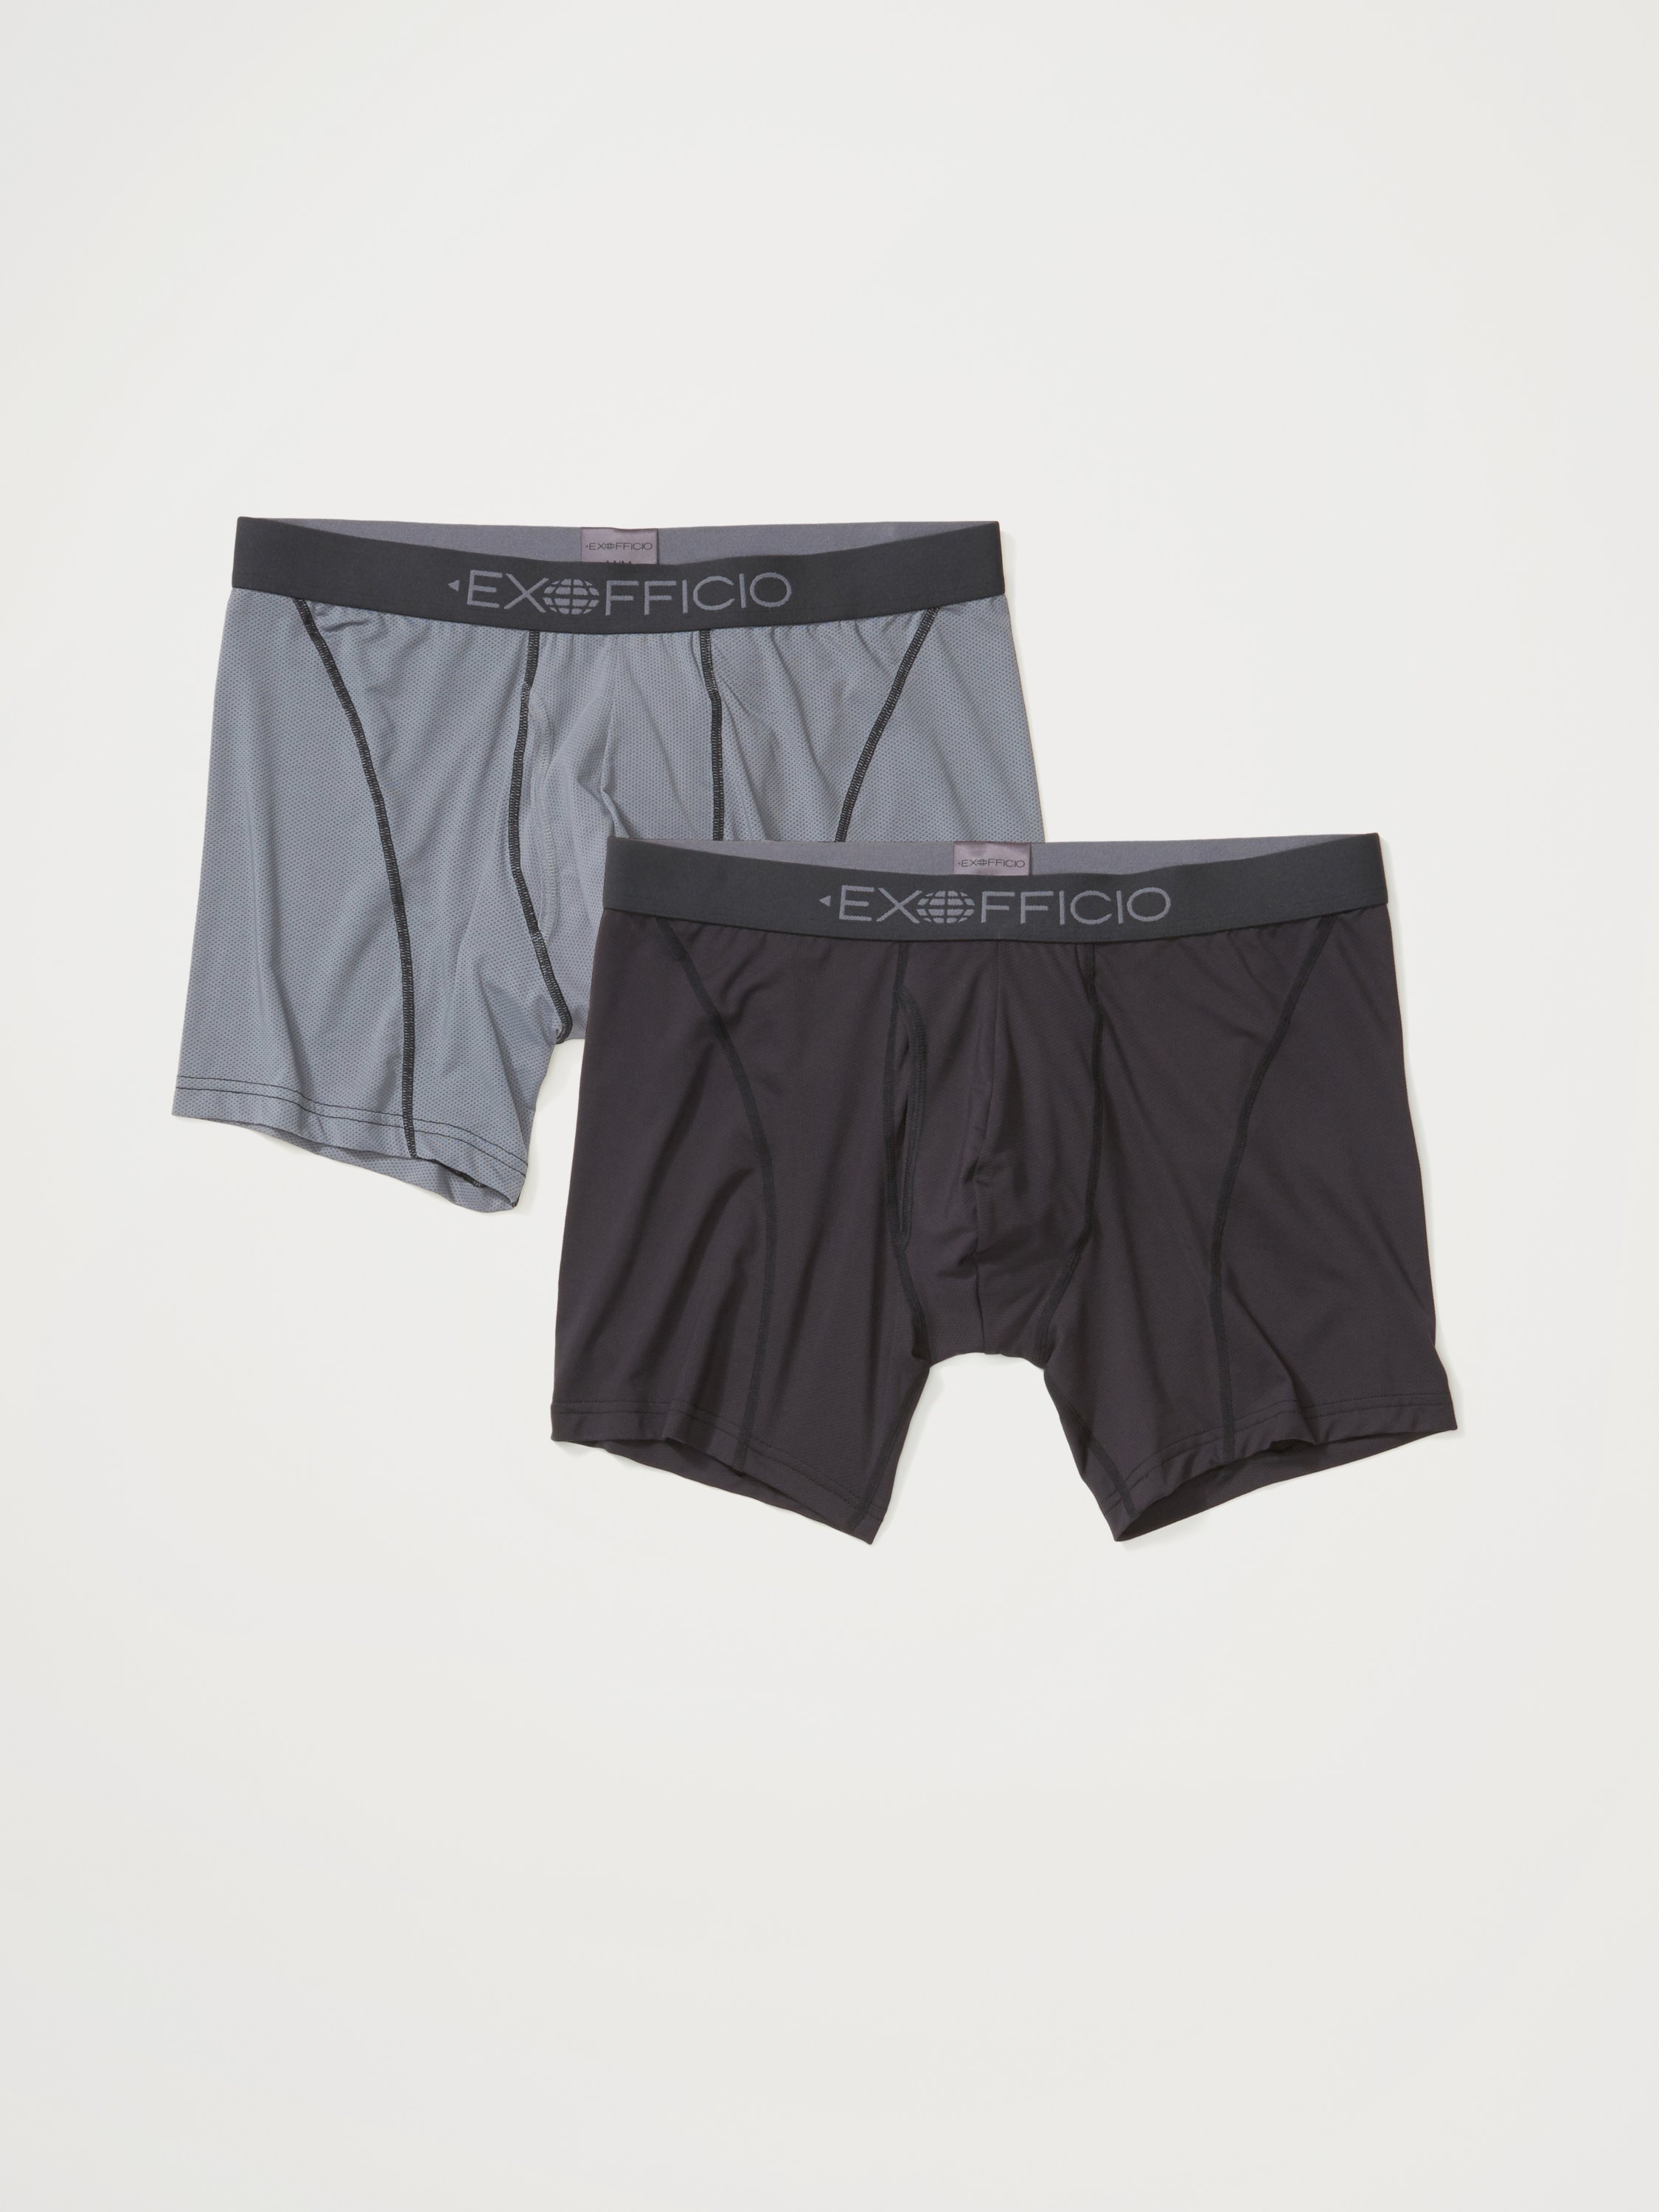 Exofficio Men's Give-N-Go 3 Sport Mesh Boxer Brief Travel Underwear – Pack  Light